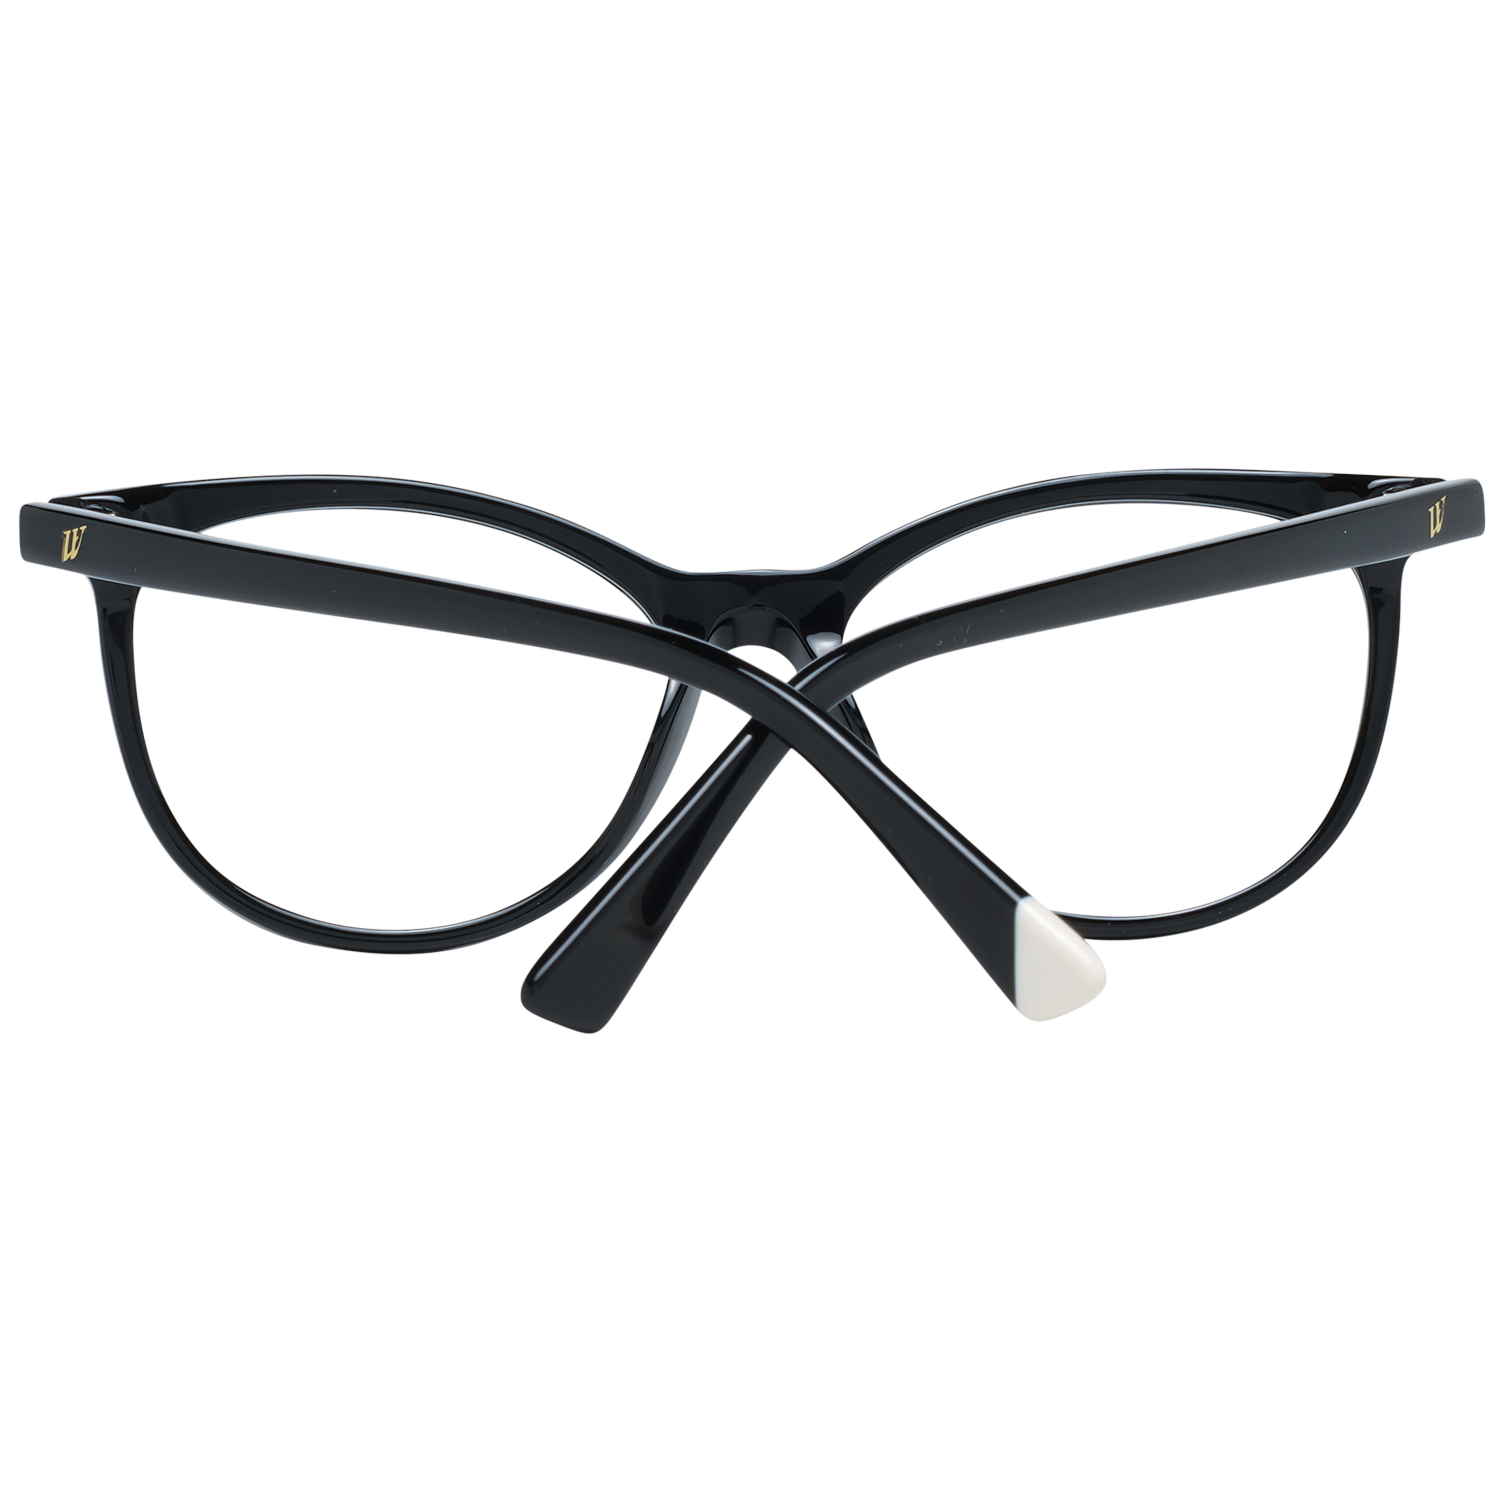 Web Frames Web Optical Frame WE5342 001 53 Eyeglasses Eyewear UK USA Australia 